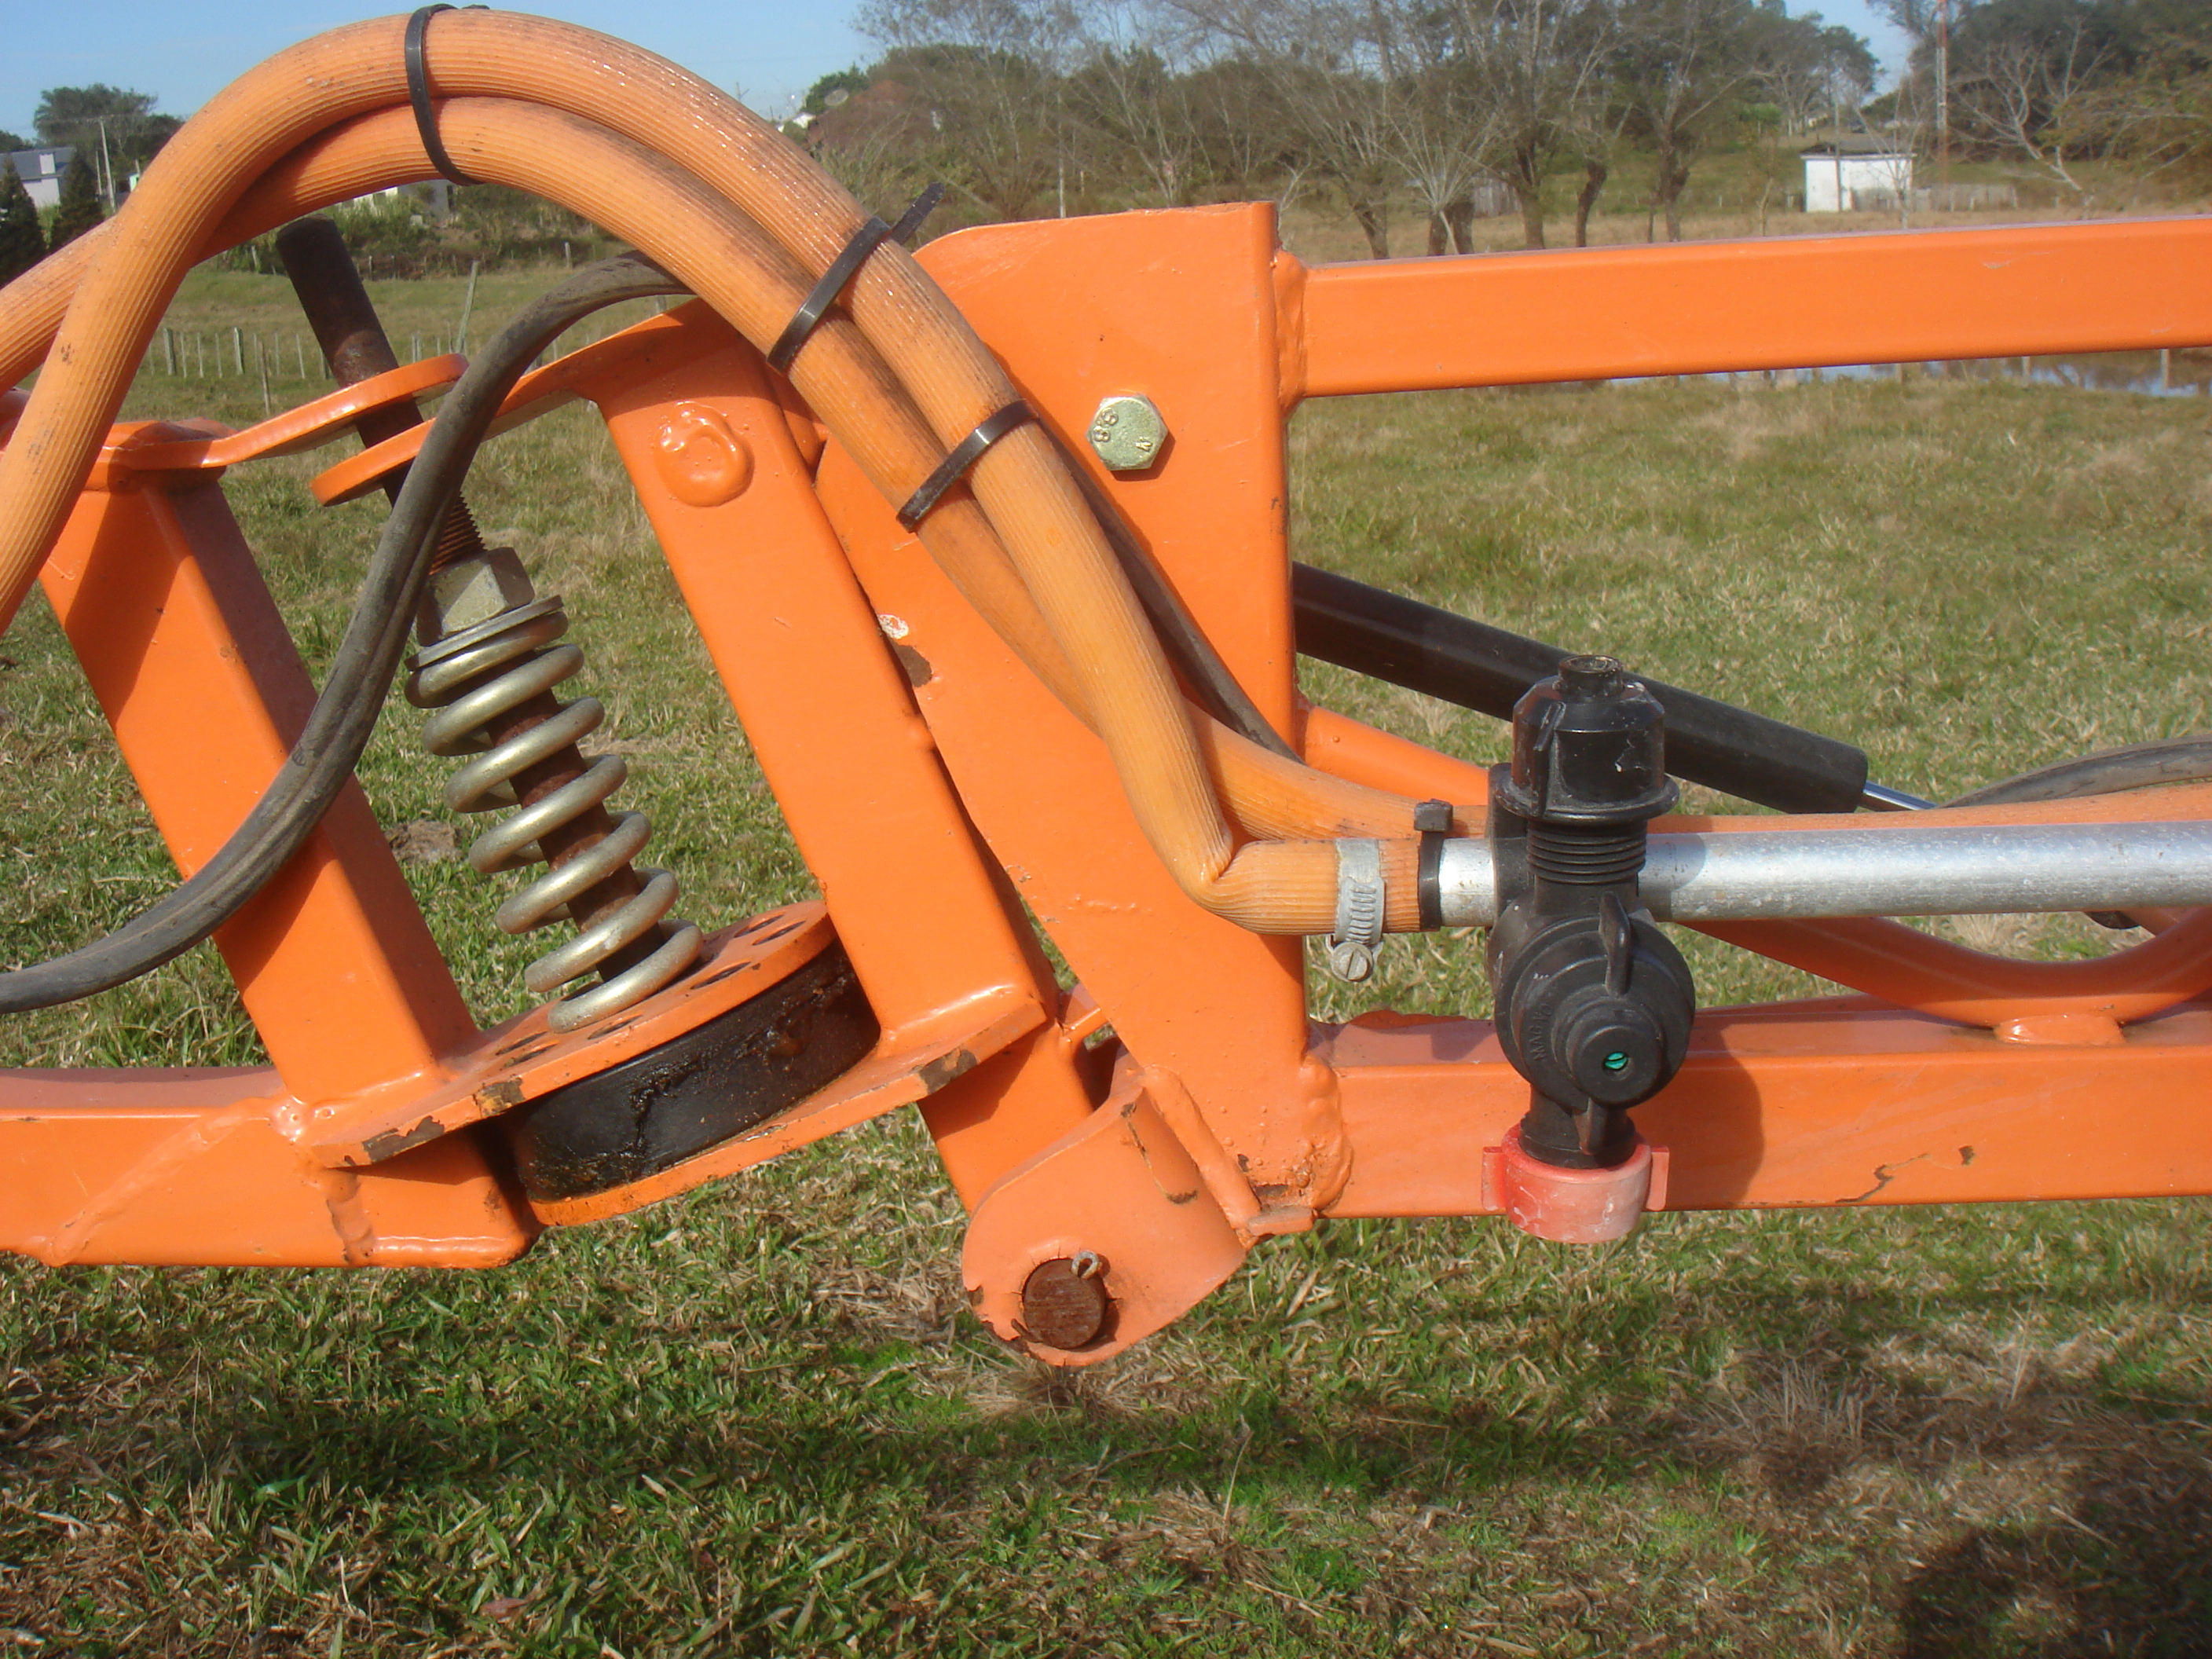 Posicionamento inadequado das mangueiras na barra de pulverização e obstrução do fluxo de calda no sistema hidráulico. 